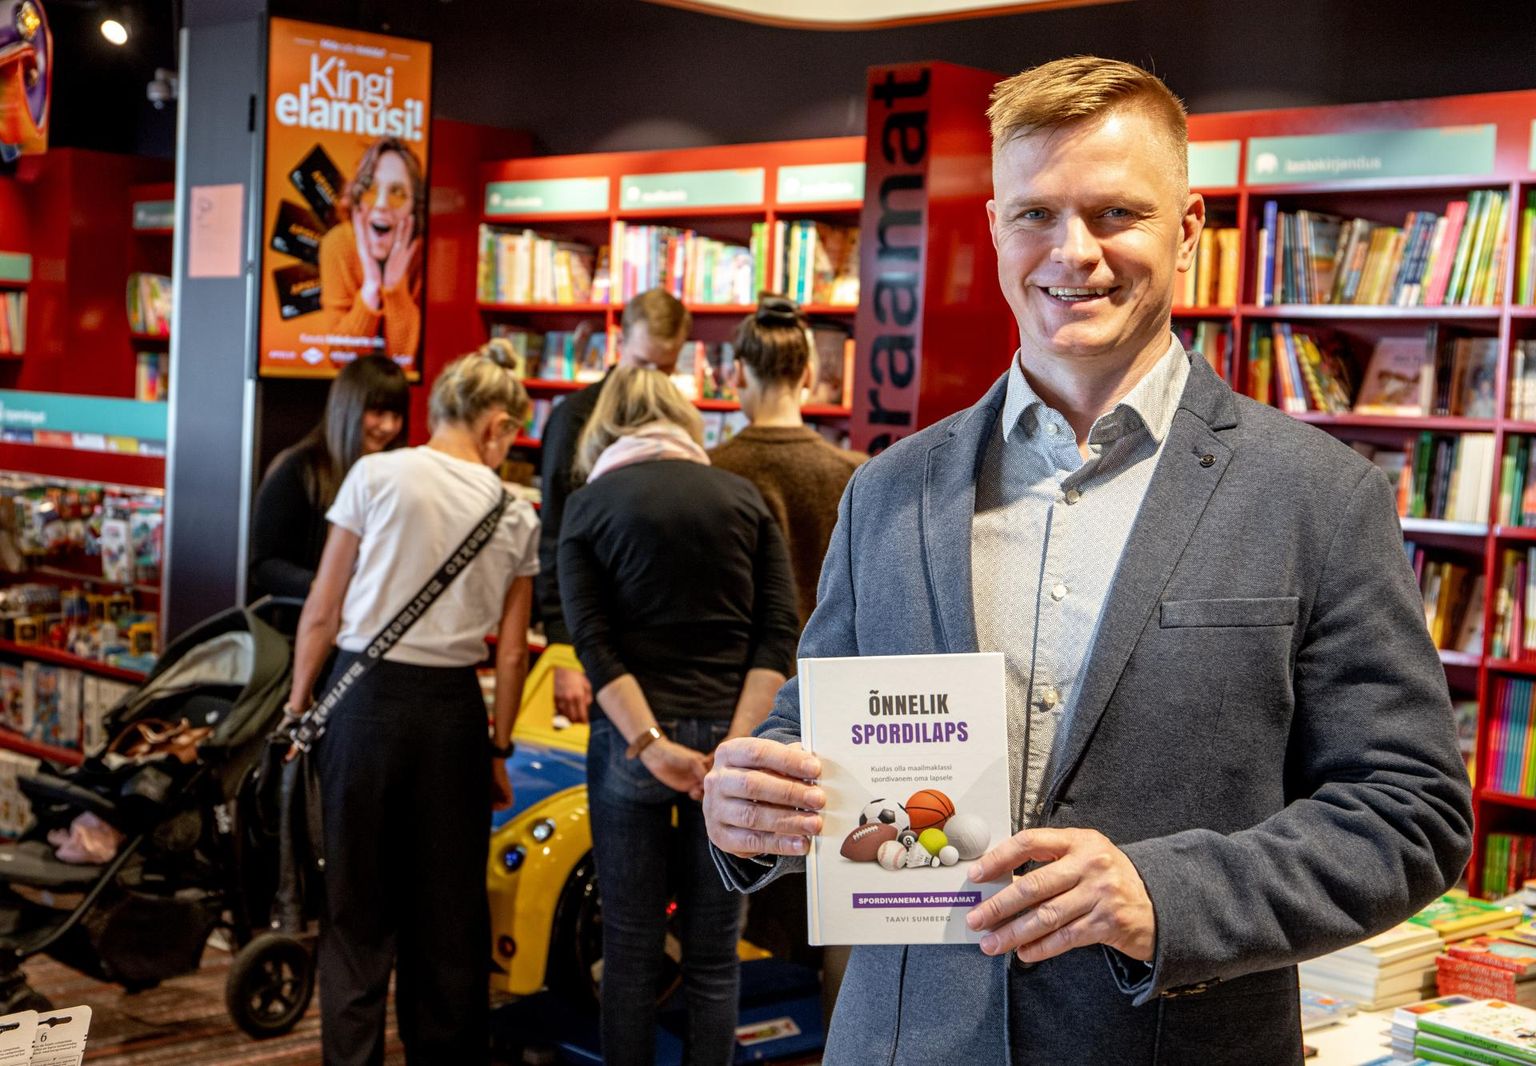 Taavi Sumberg esitles Pärnus oma raamatut “Õnnelik spordilaps. Kuidas olla maailmaklassi spordivanem oma lapsele”.